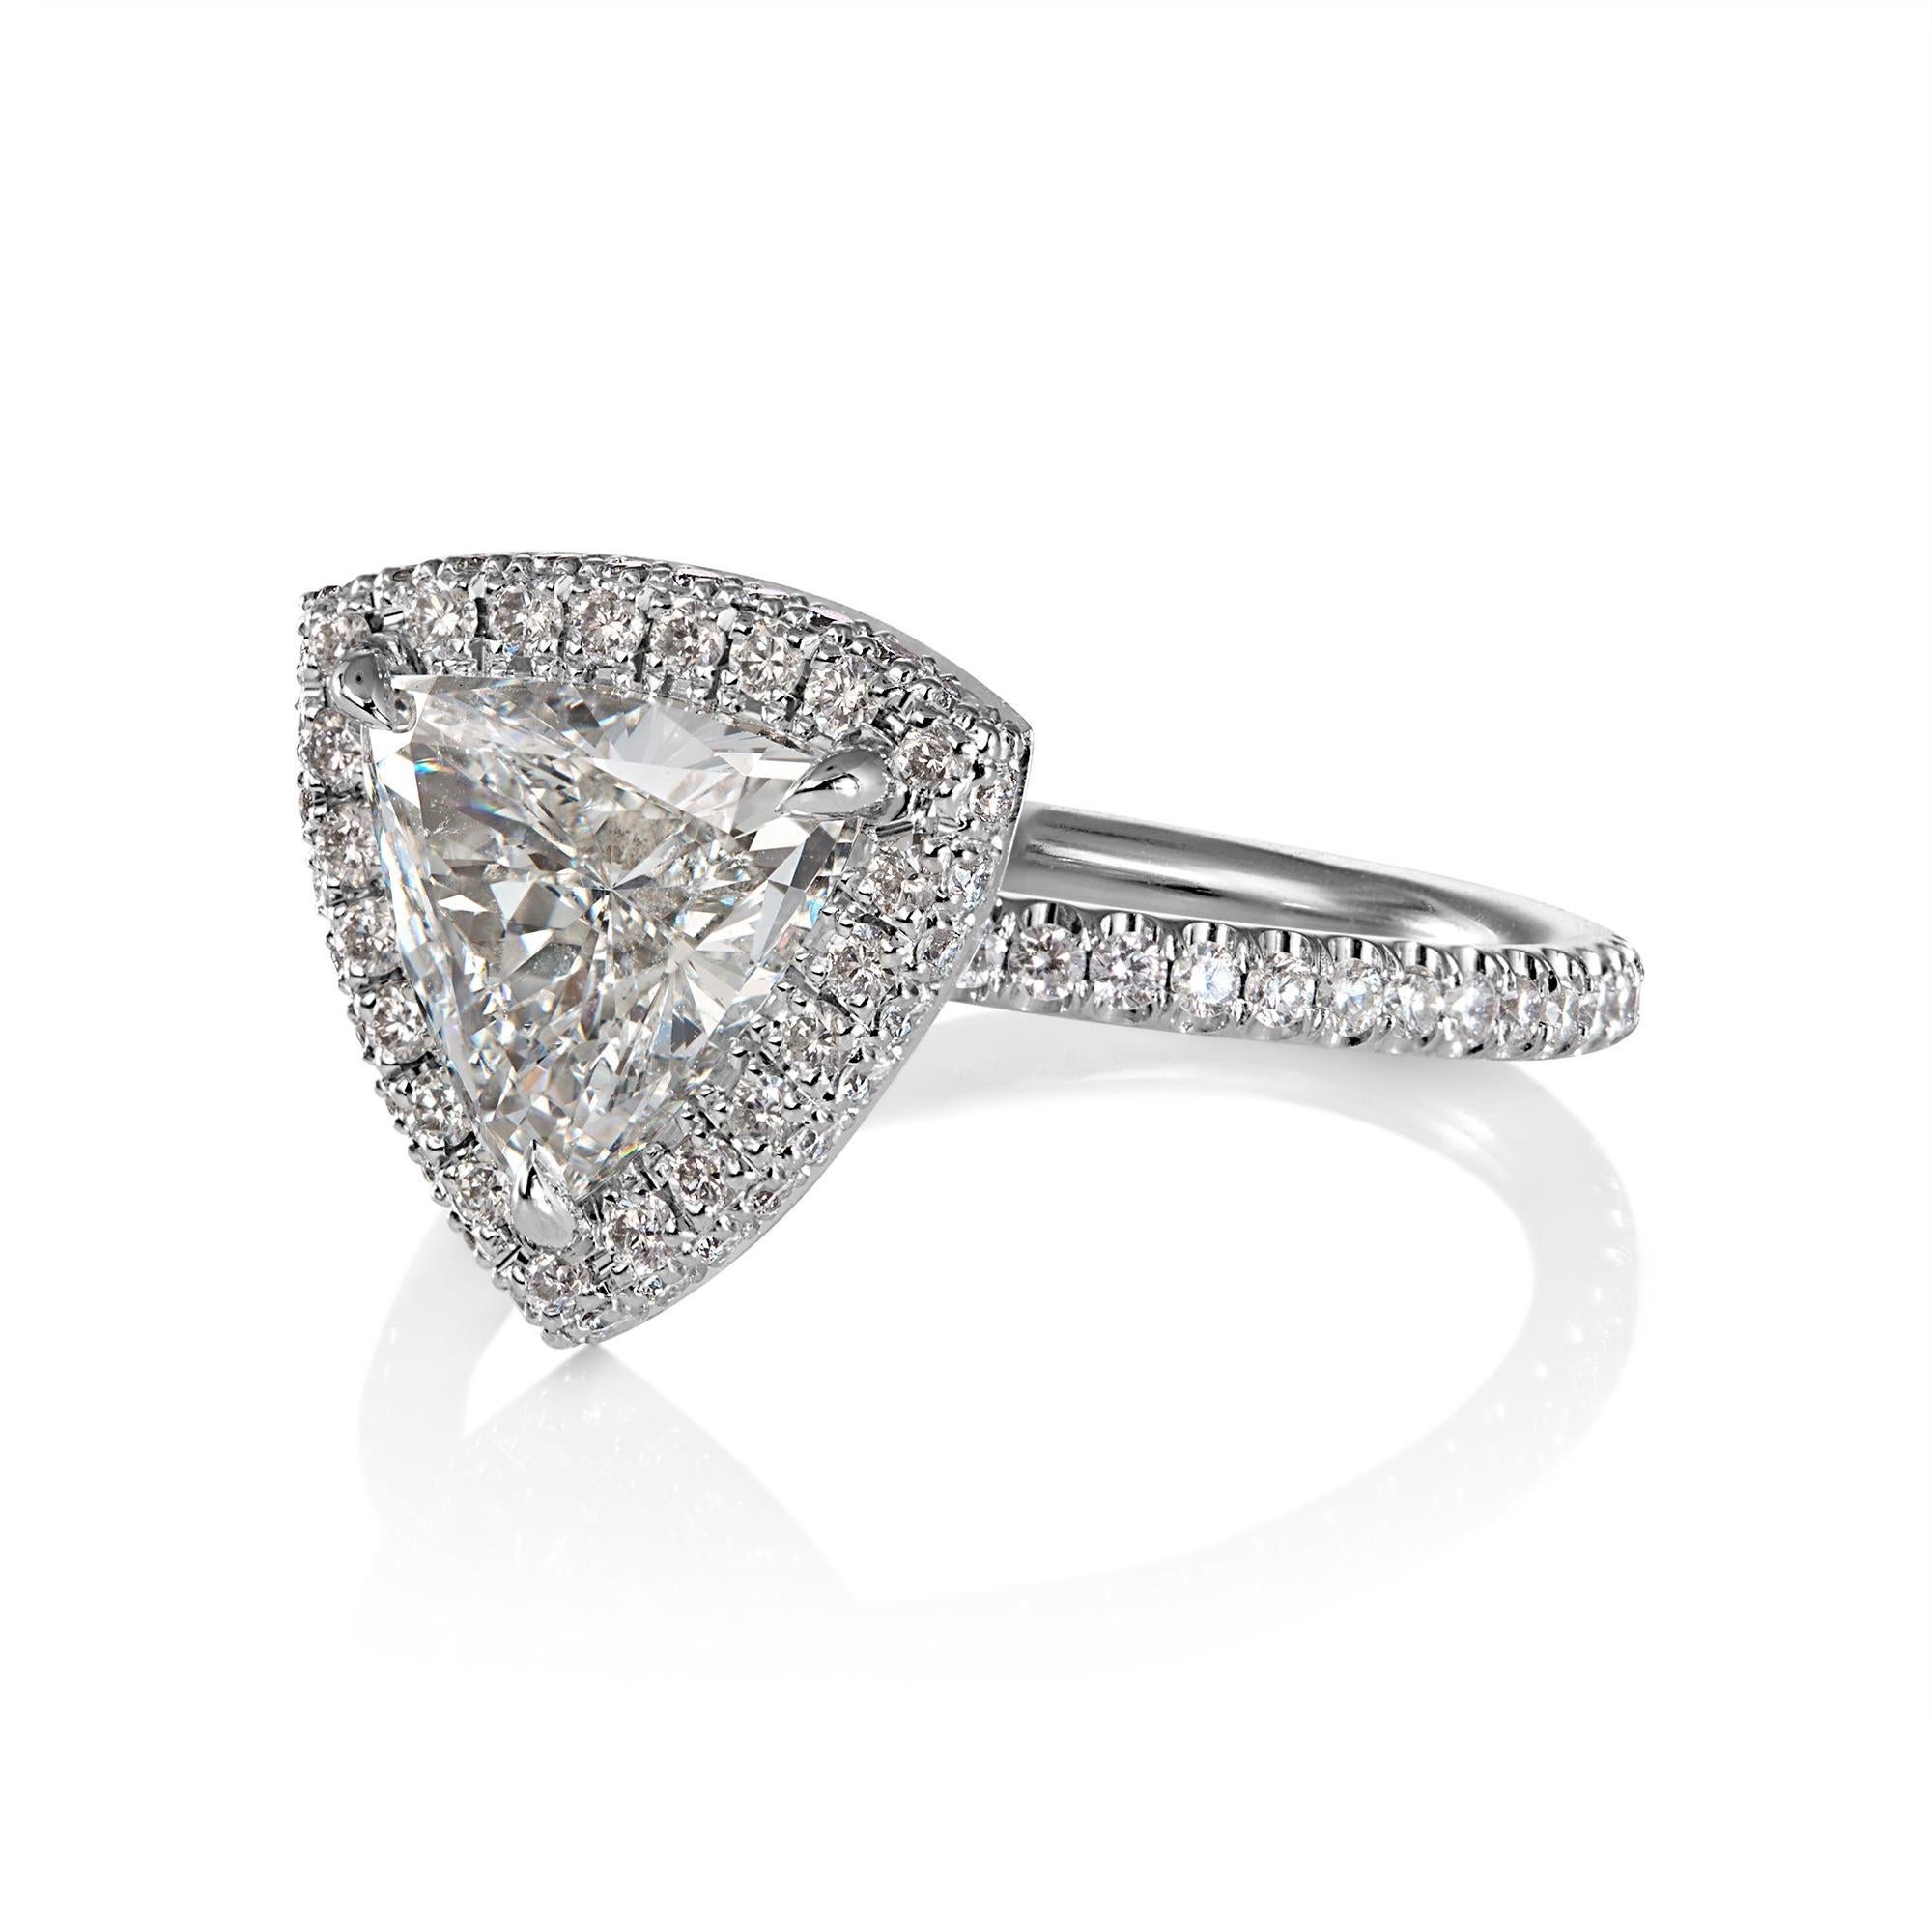 Bague de fiançailles GIA 2,04ctw Trillion Diamond Double Edge Halo Pave Platinum Anniversary Ring.

Le centre est un Trillion, un brillant triangulaire de 1.48CT de couleur J, de clarté SI2 (SUPER Brillant, blanc presque incolore et œil clair),